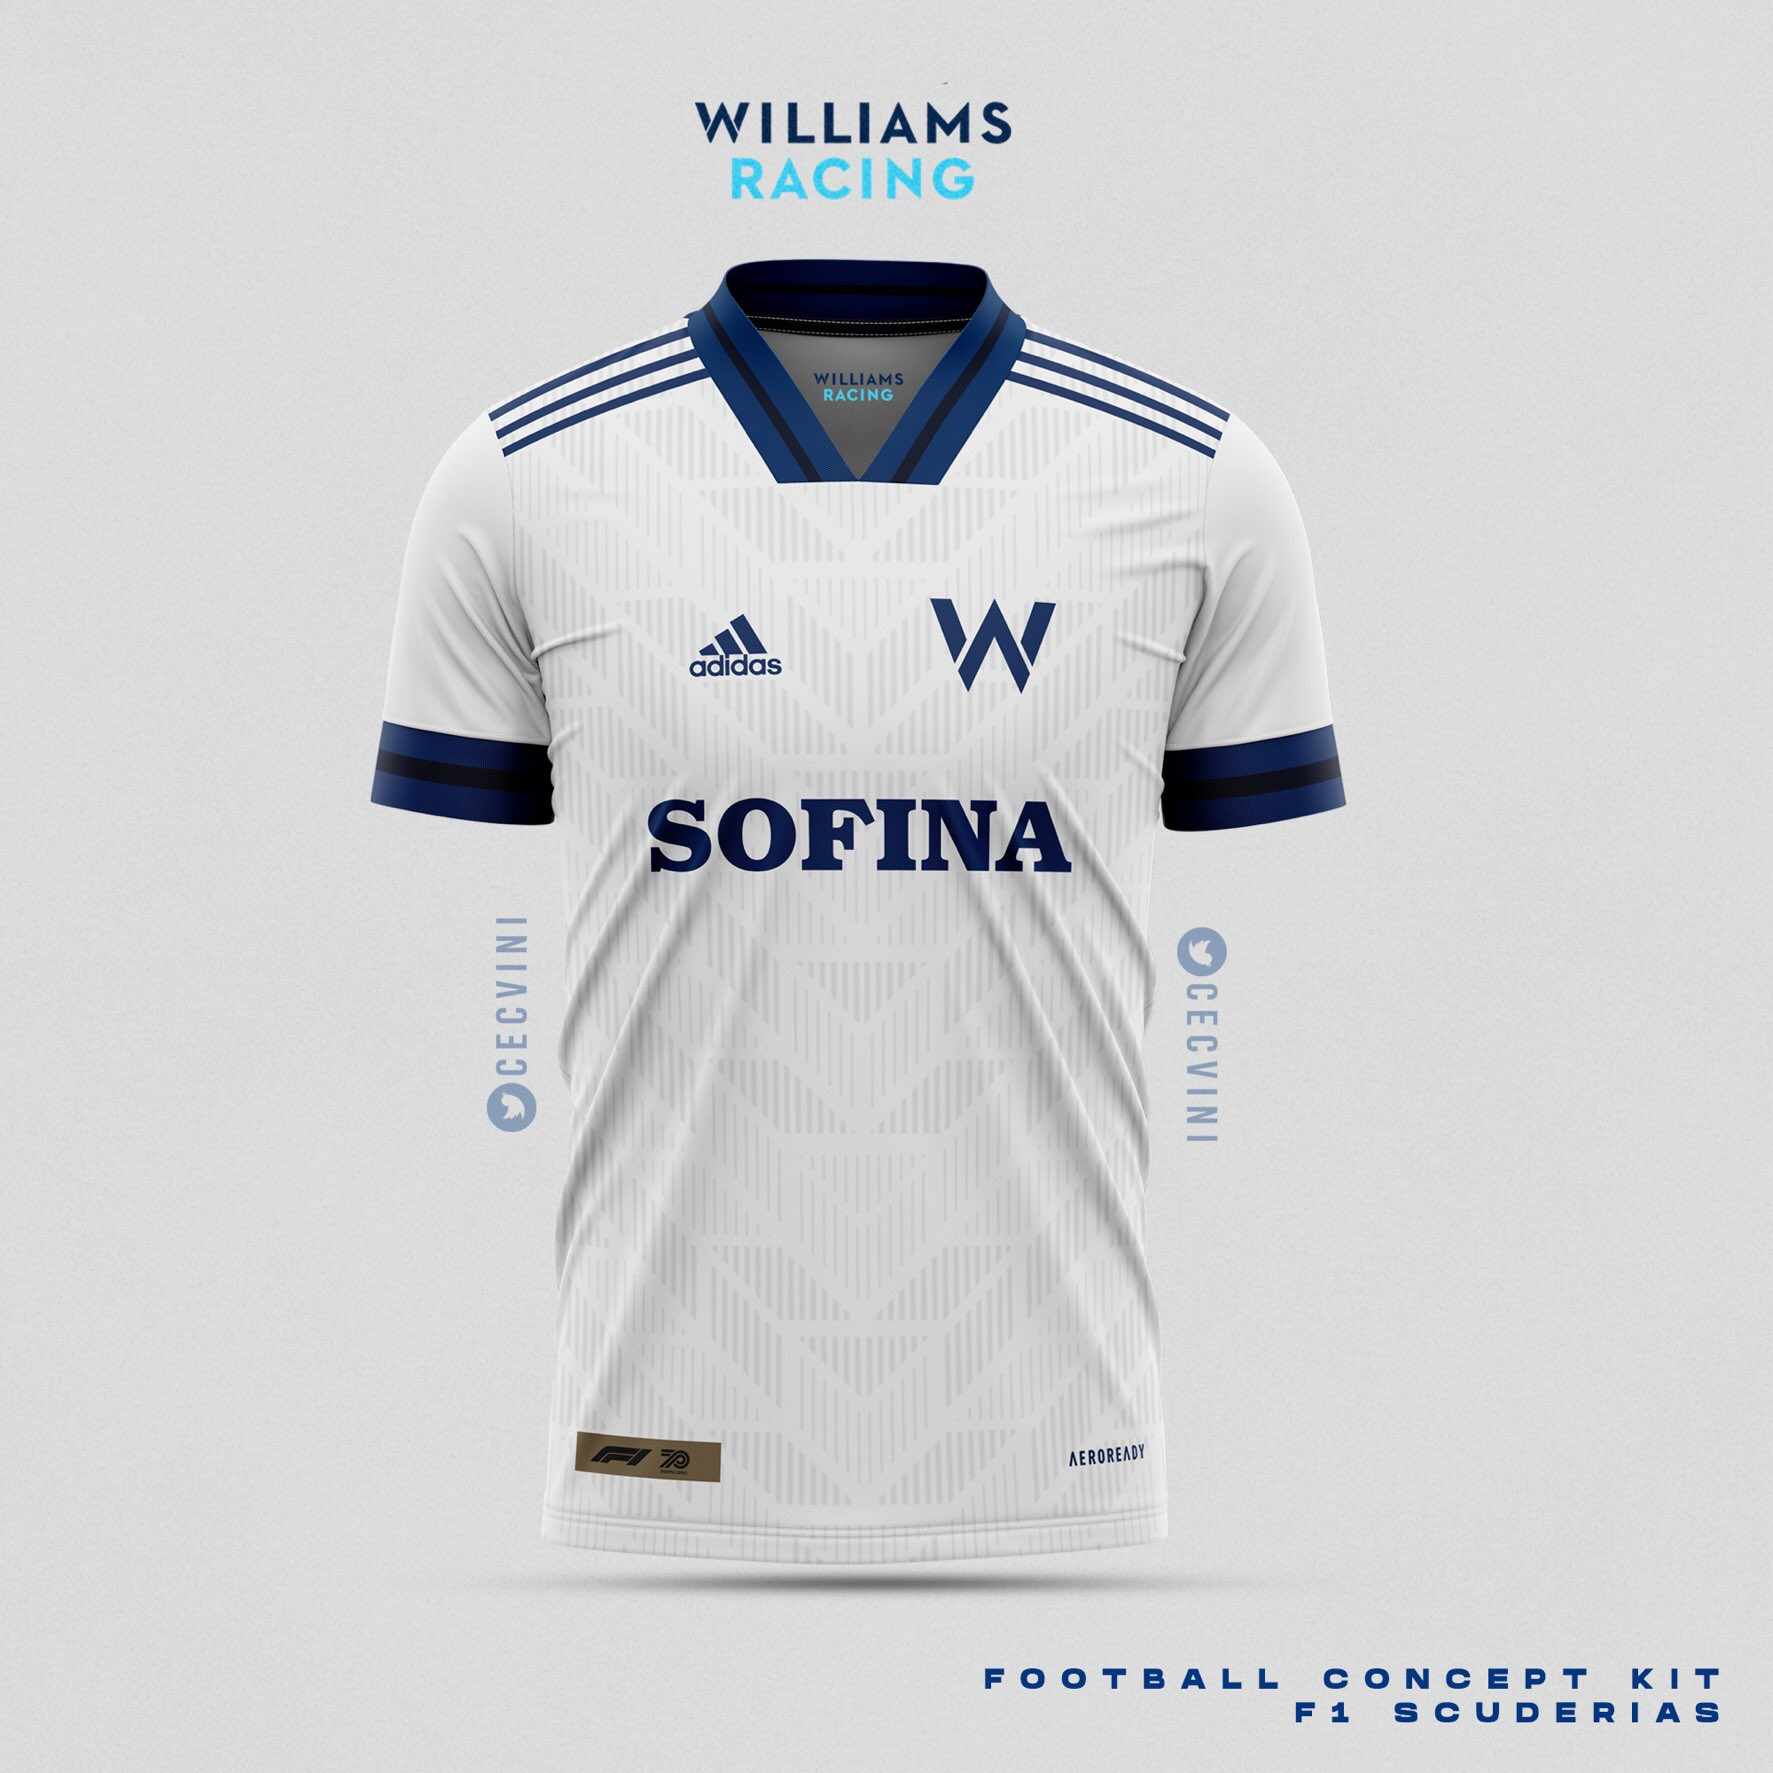 A camisa da Williams